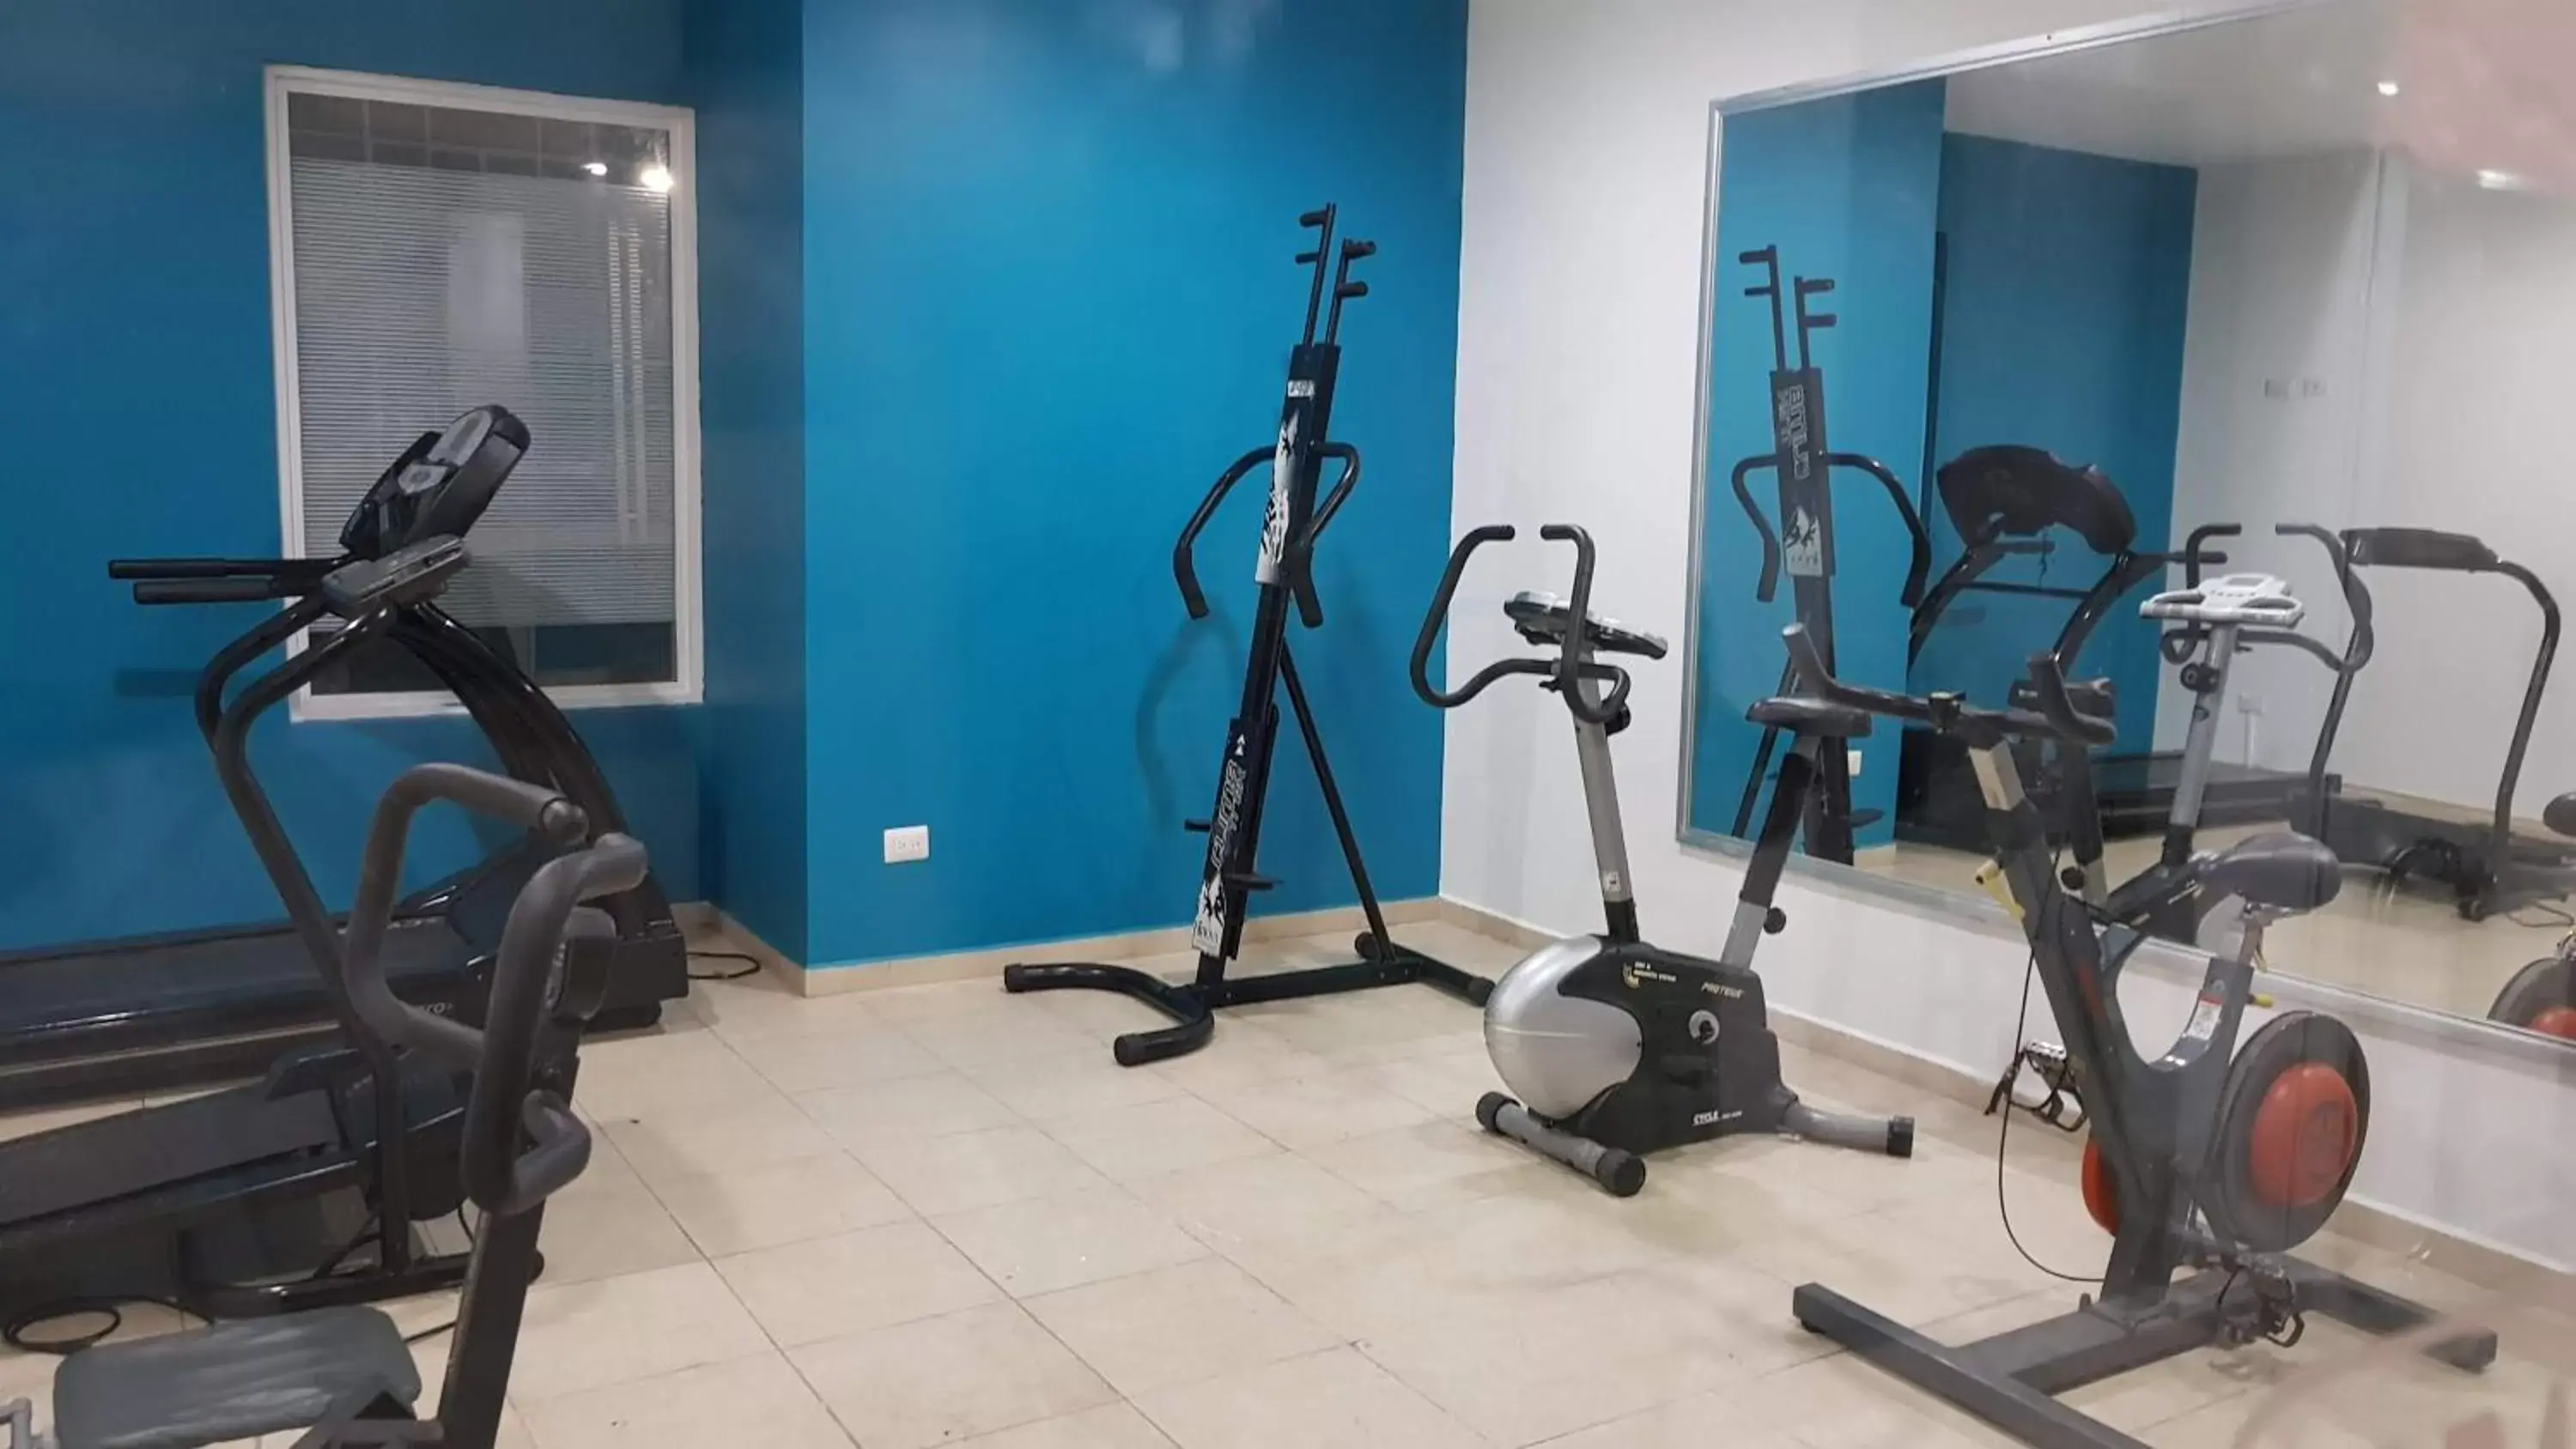 Fitness centre/facilities, Fitness Center/Facilities in HOTEL OLIBA Boca del Rio